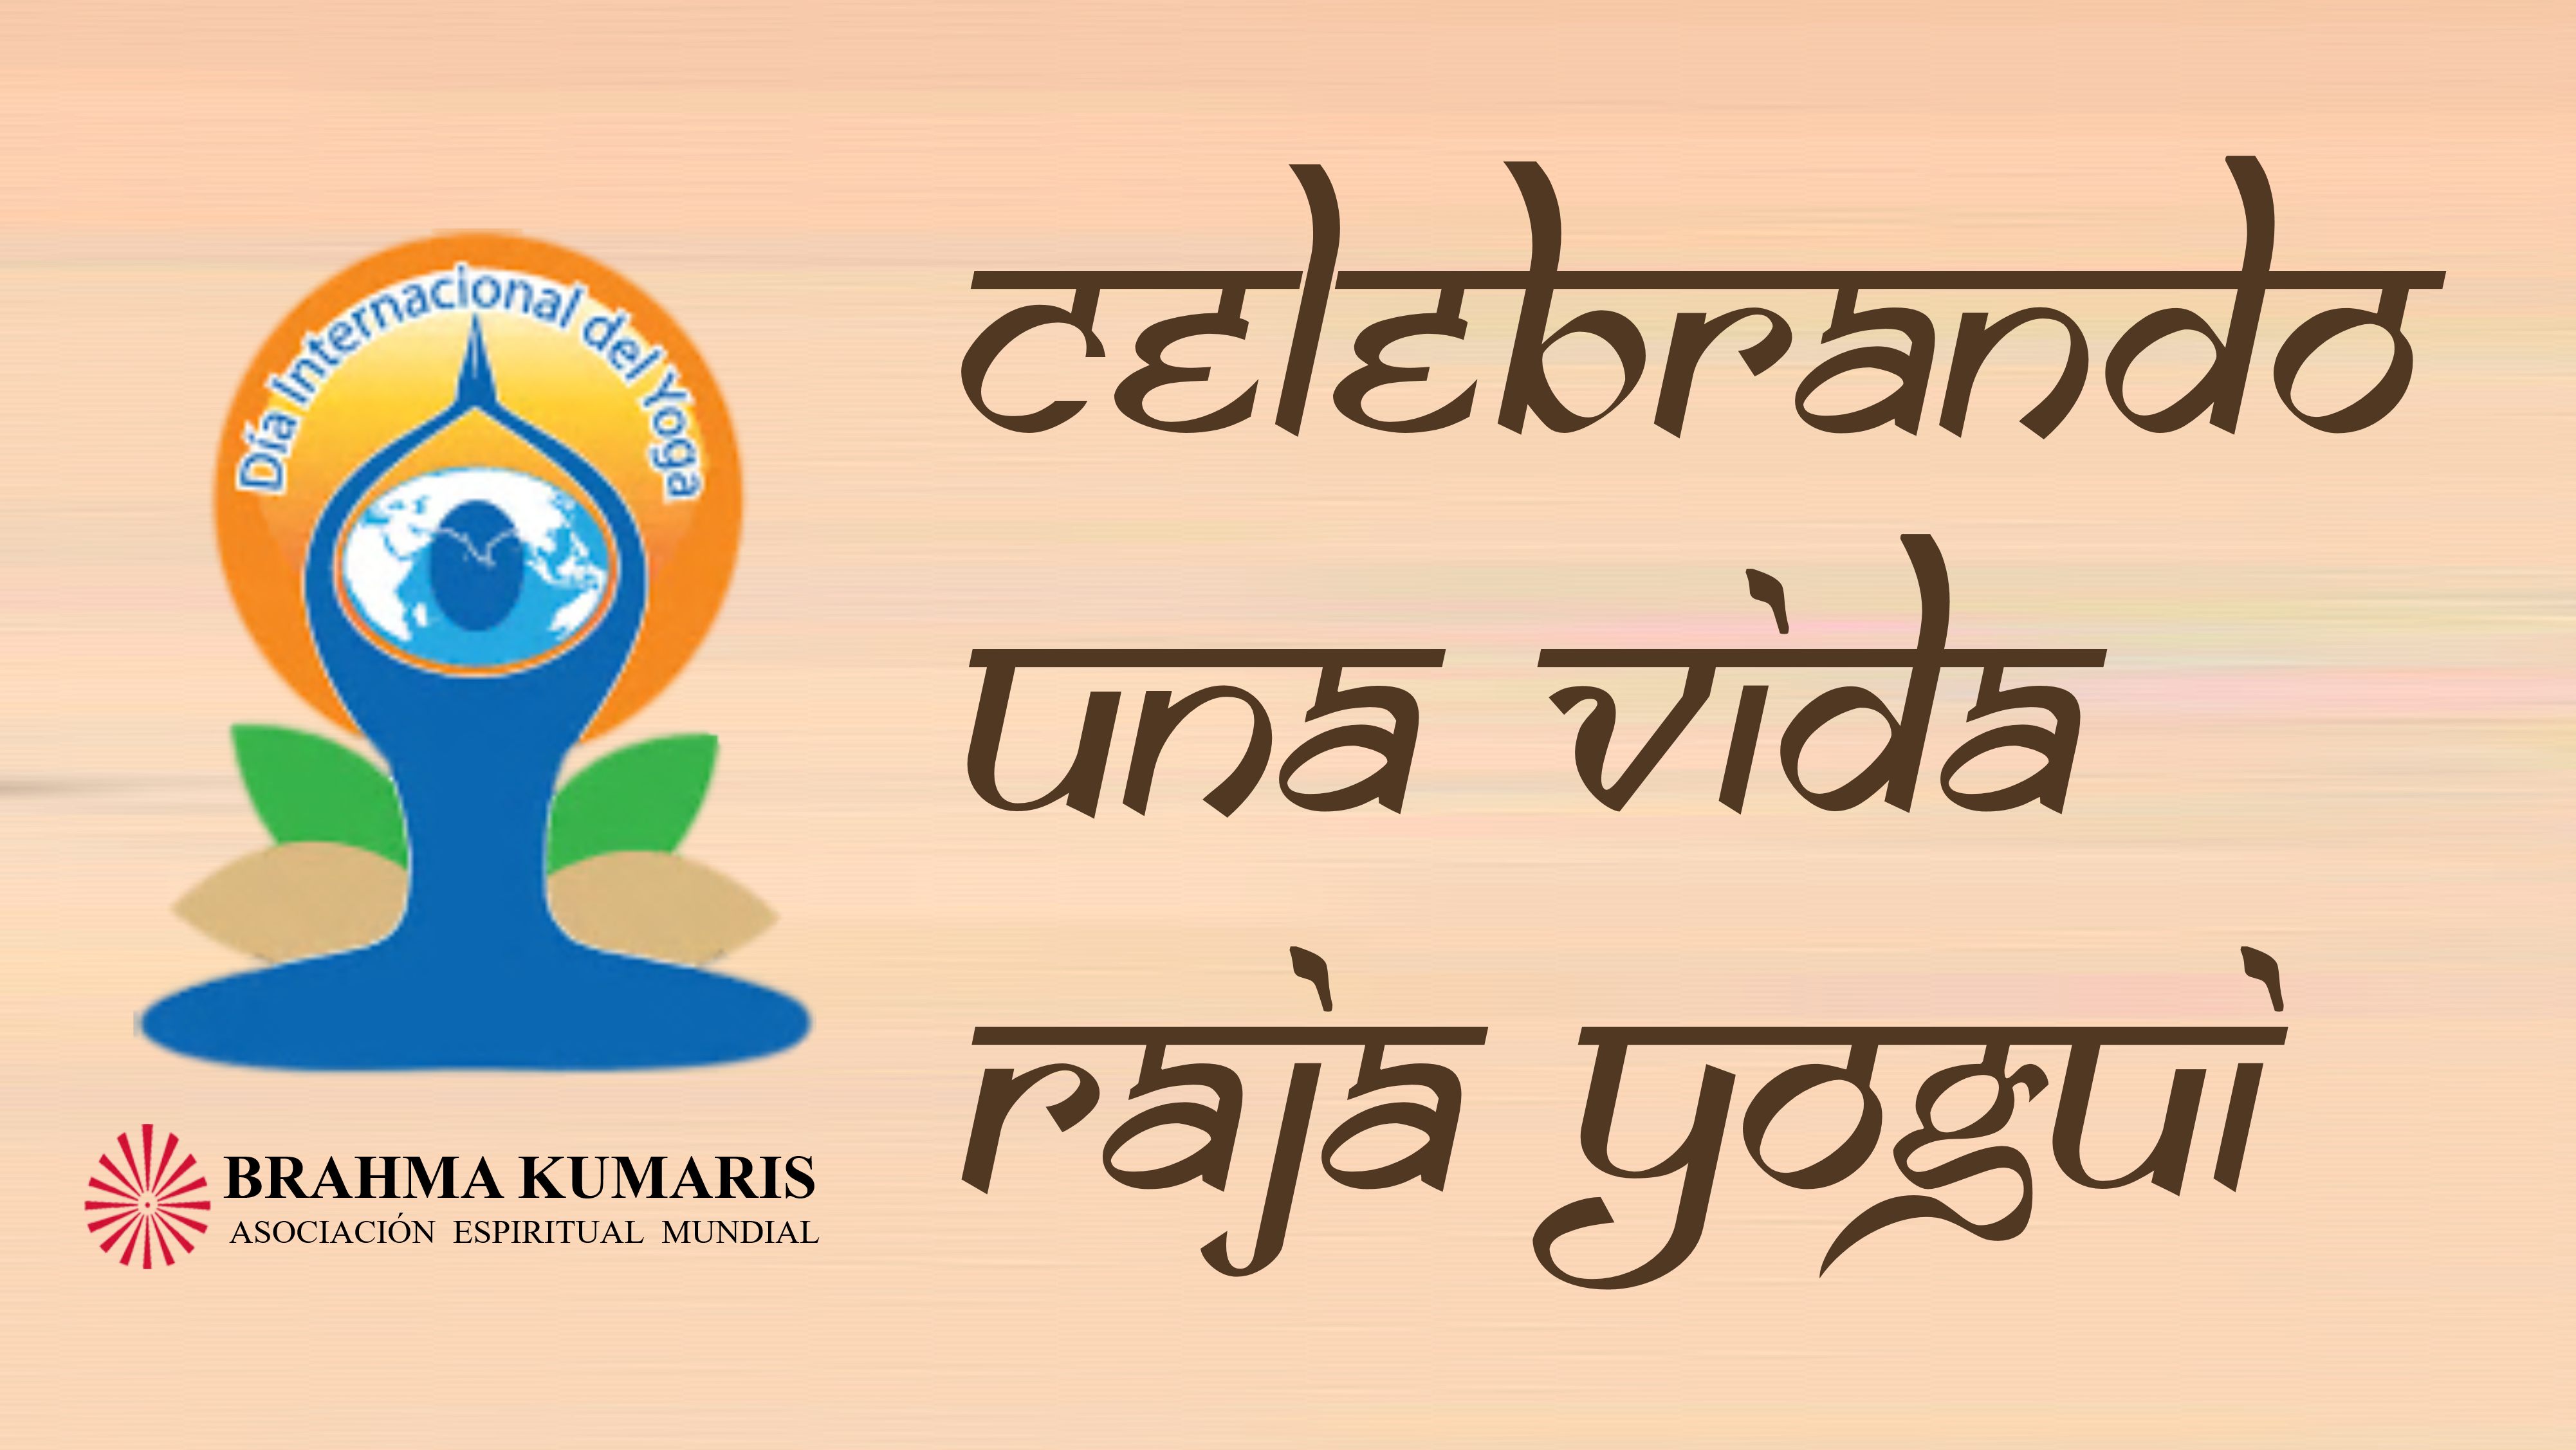 21 Junio 2021 PROGRAMA ESPECIAL DÍA INTERNACIONAL del YOGA: Celebrando una vida Raja Yogui